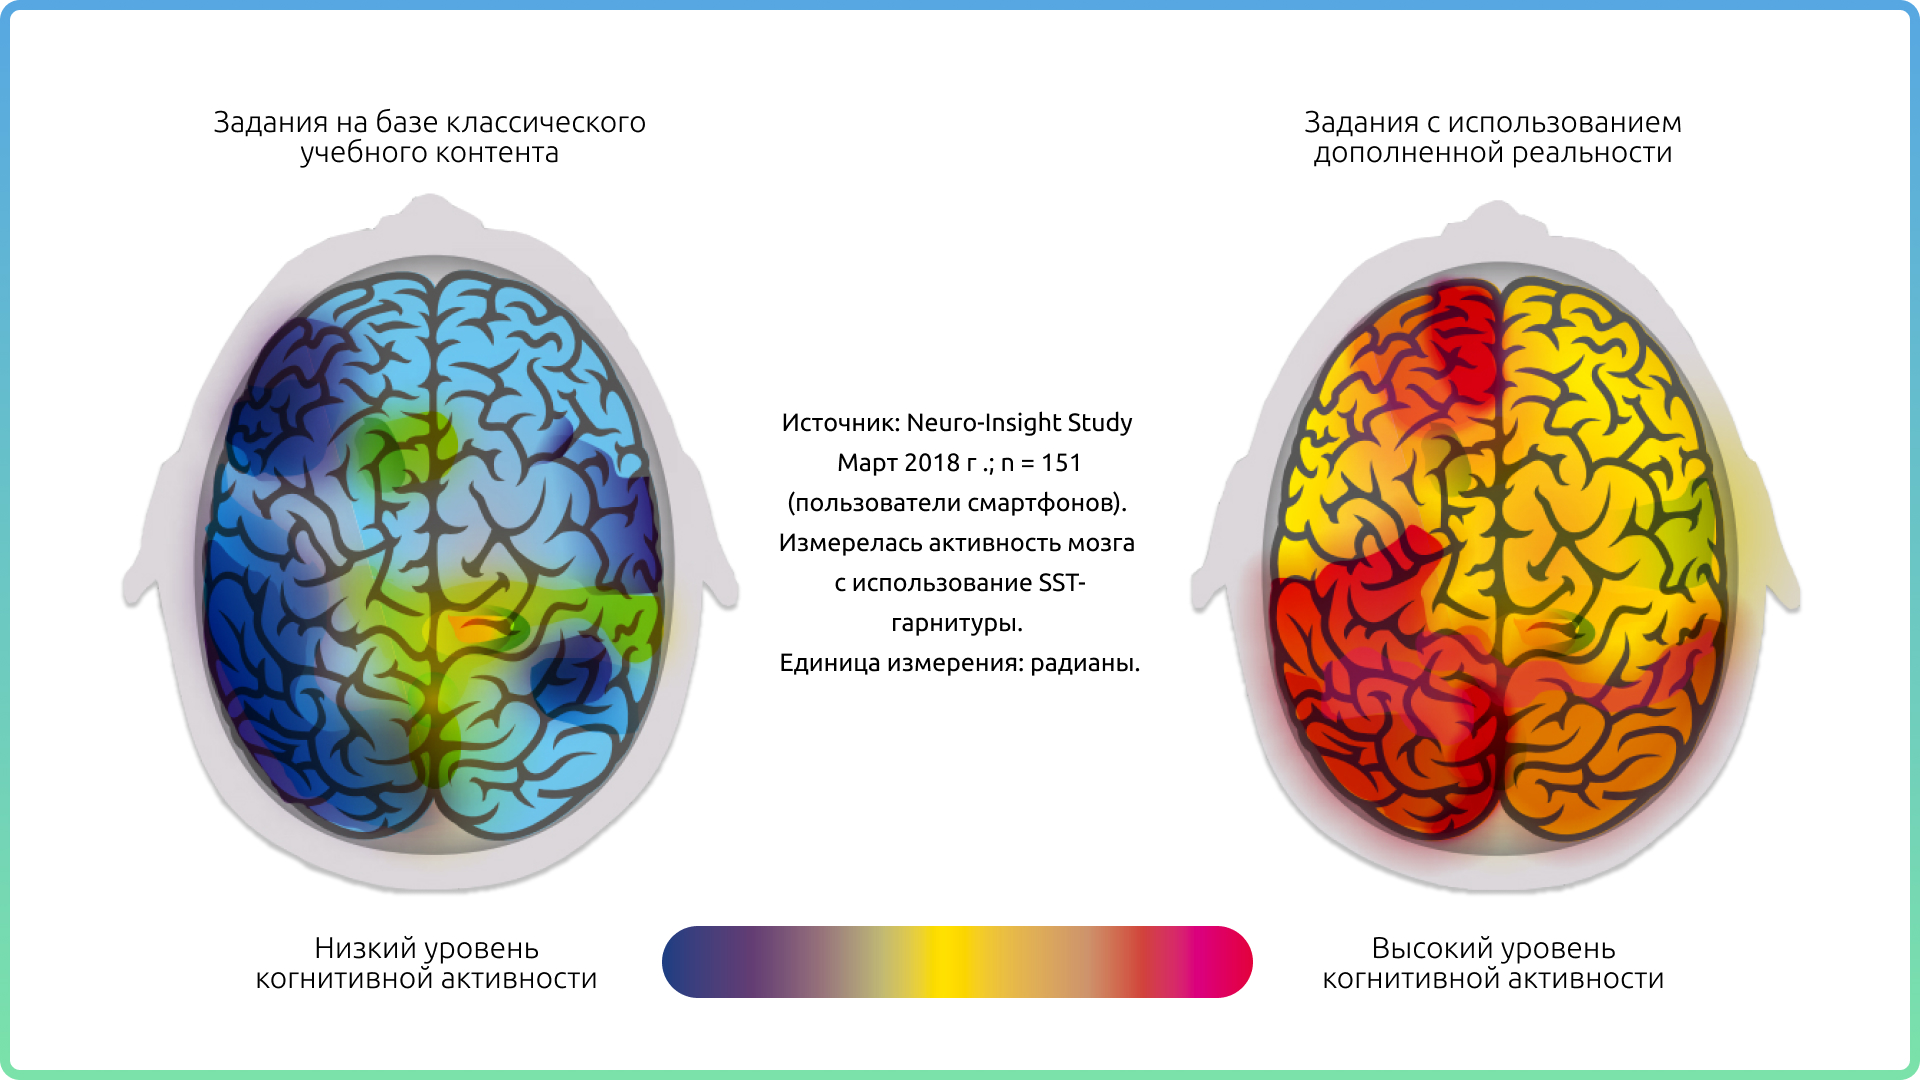 Повышение активности мозга. Электрическая активность мозга. Периоды активности мозга. Время активности мозга. Активность мозга во время чтения.